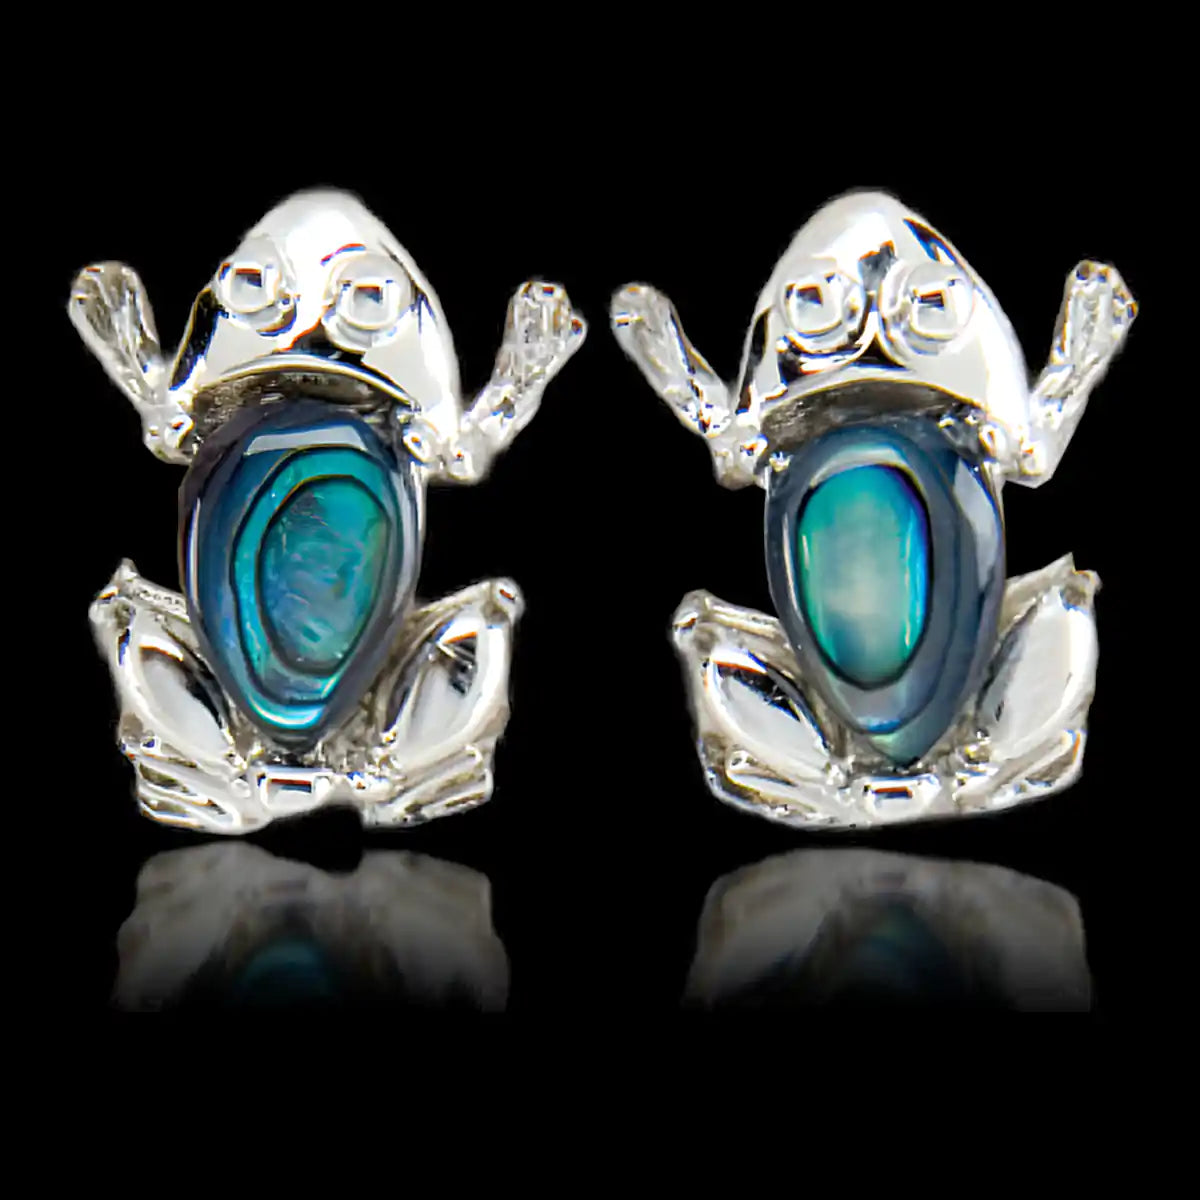 Glacier pearle frog earrings